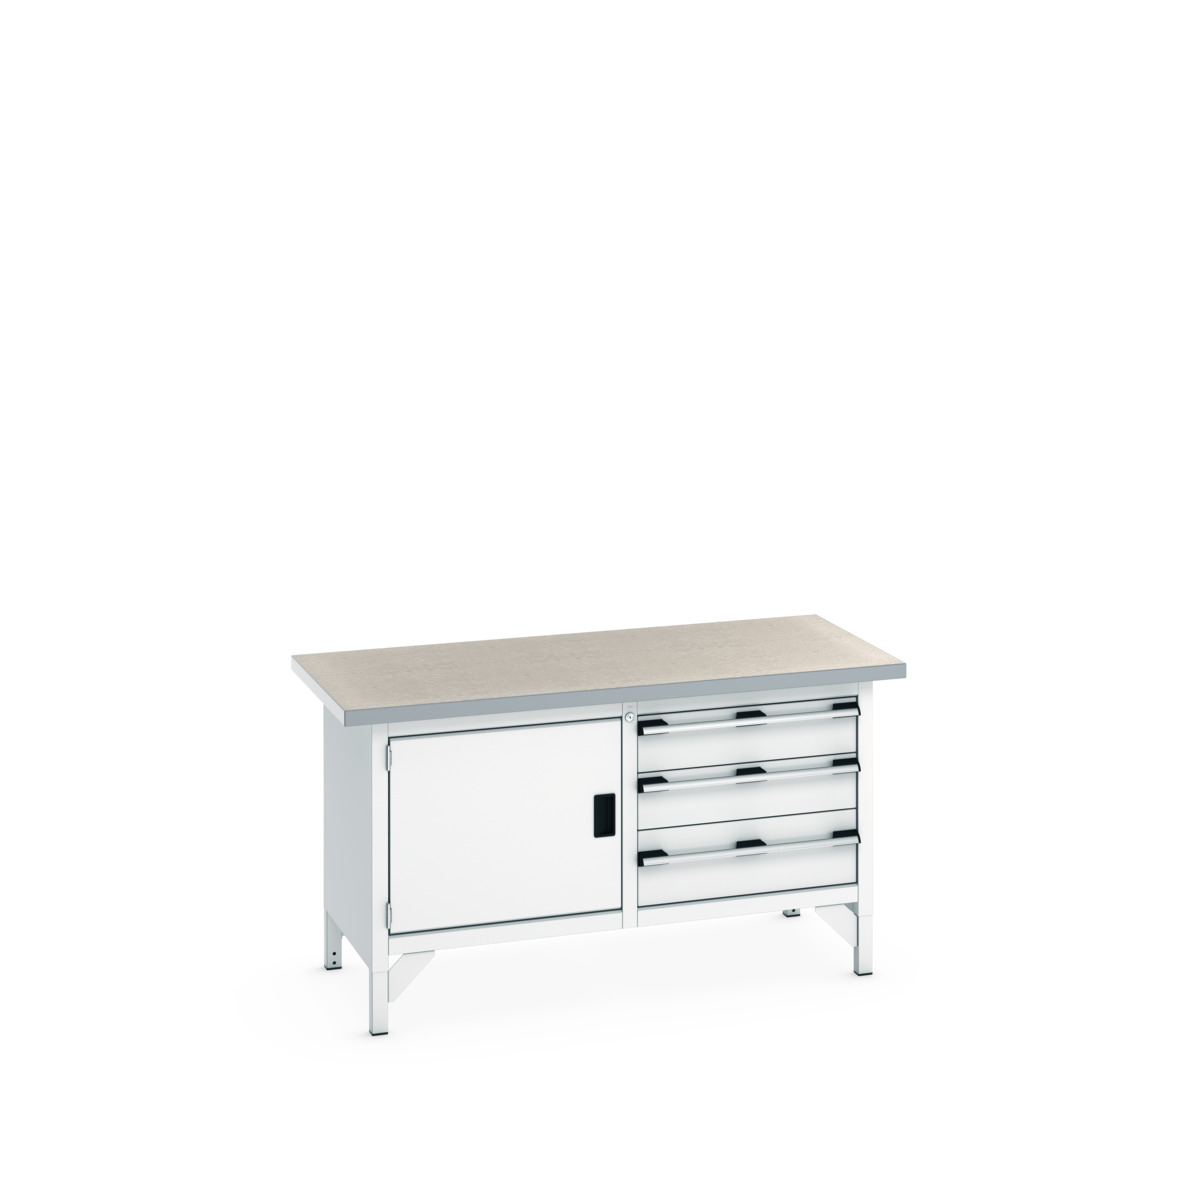 41002027.16V - cubio storage bench (lino)